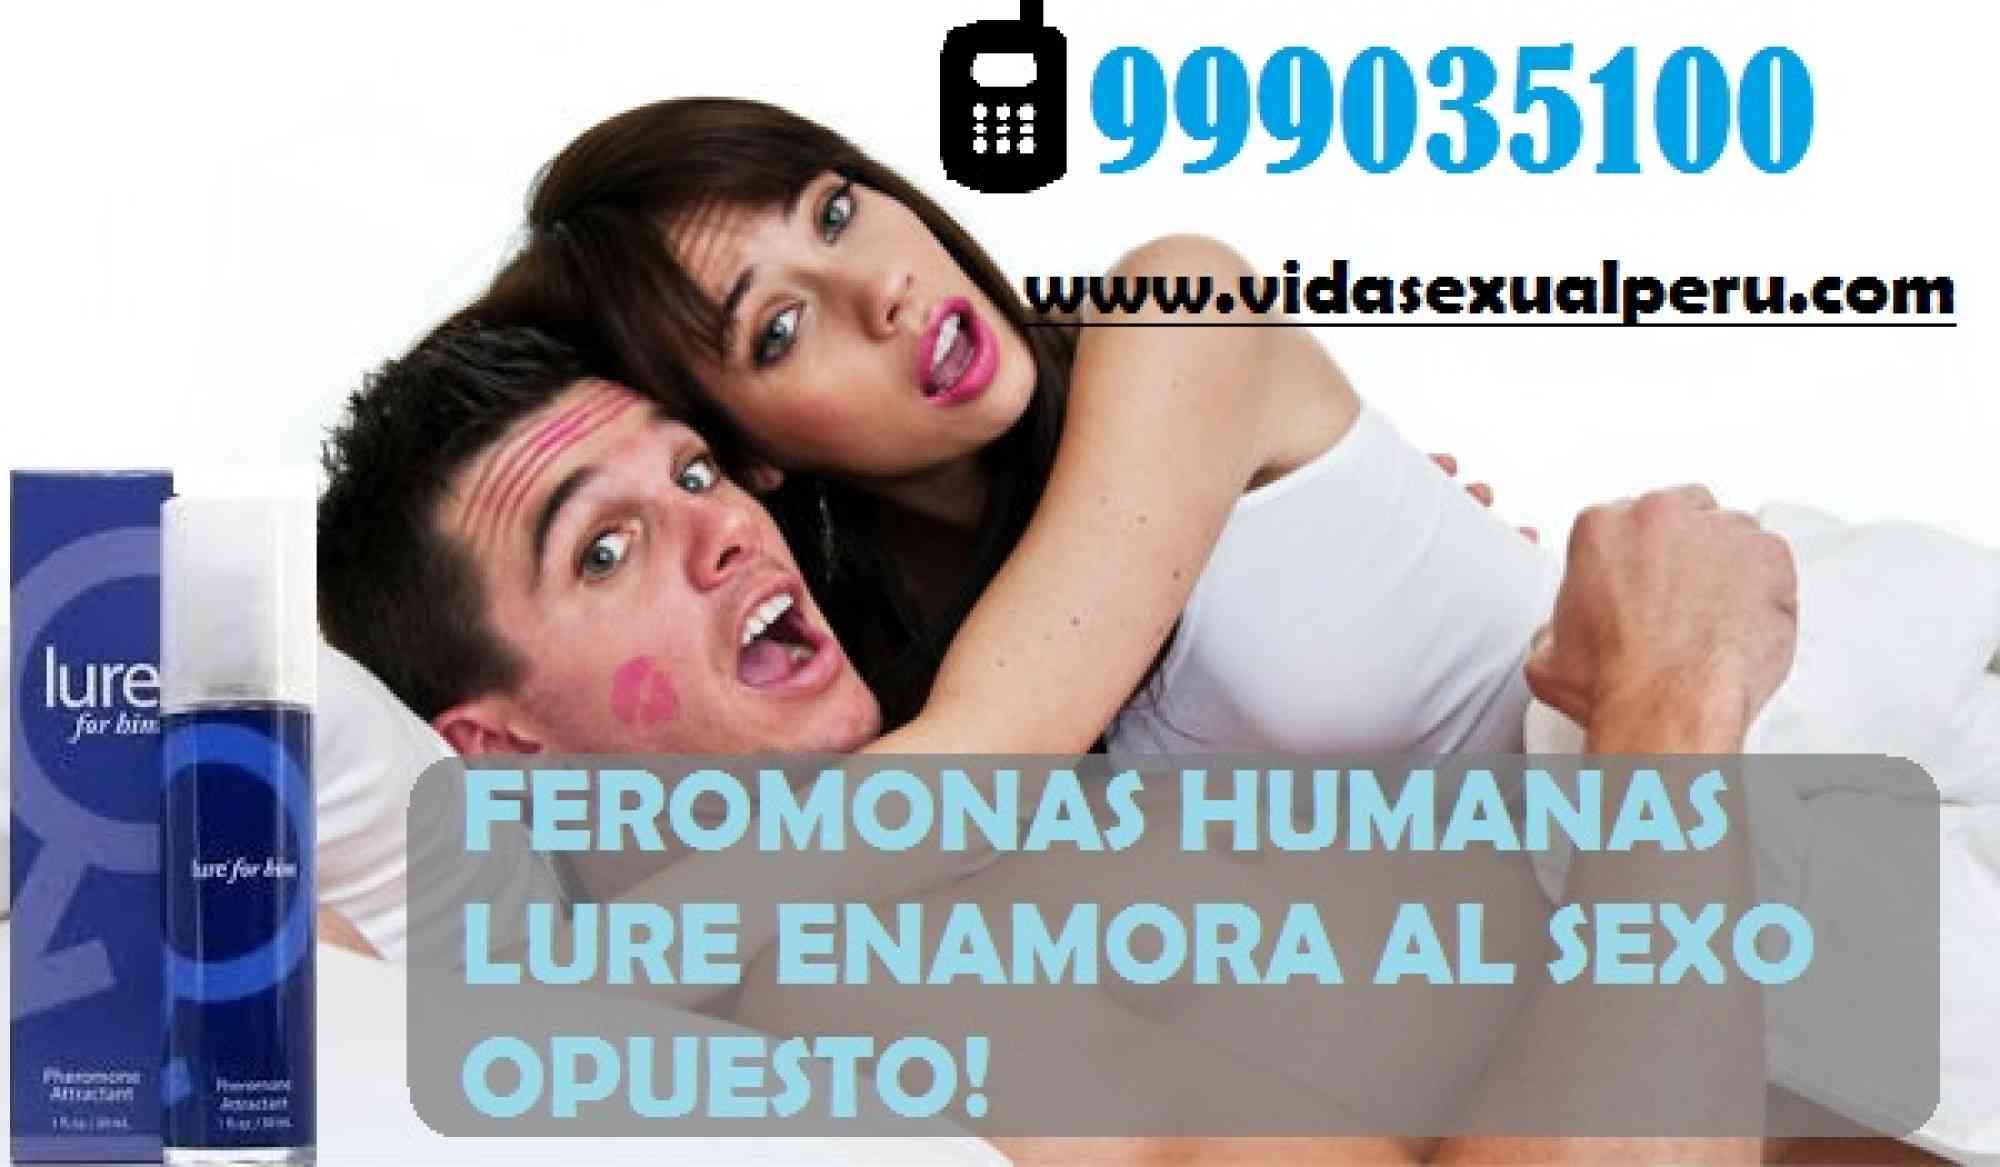 FEROMONAS LIMA CEL: 999035100 en anuncio clasificado